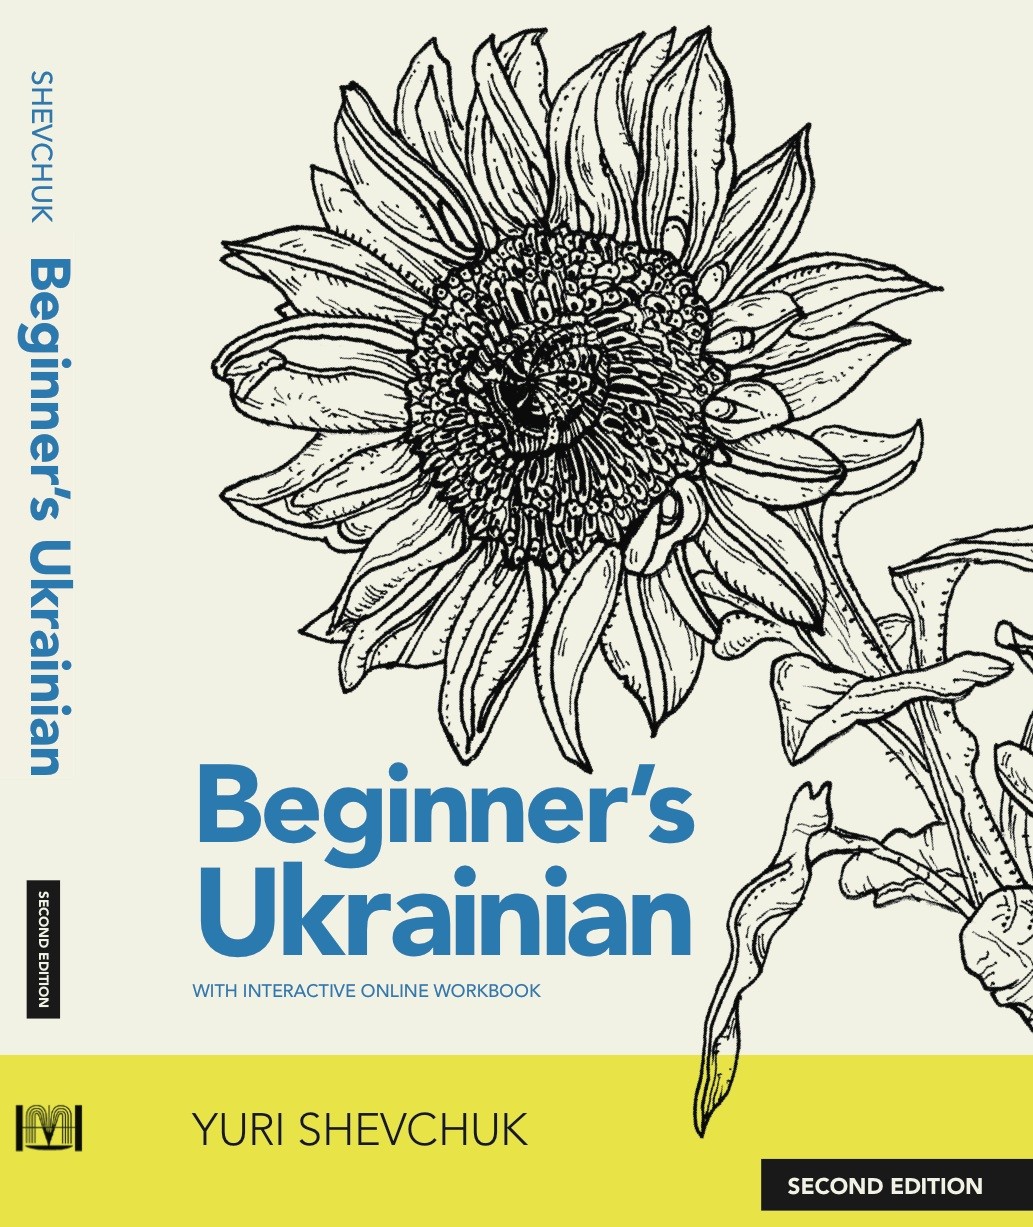 Beginner’s Ukrainian with Interactive Online Workbook